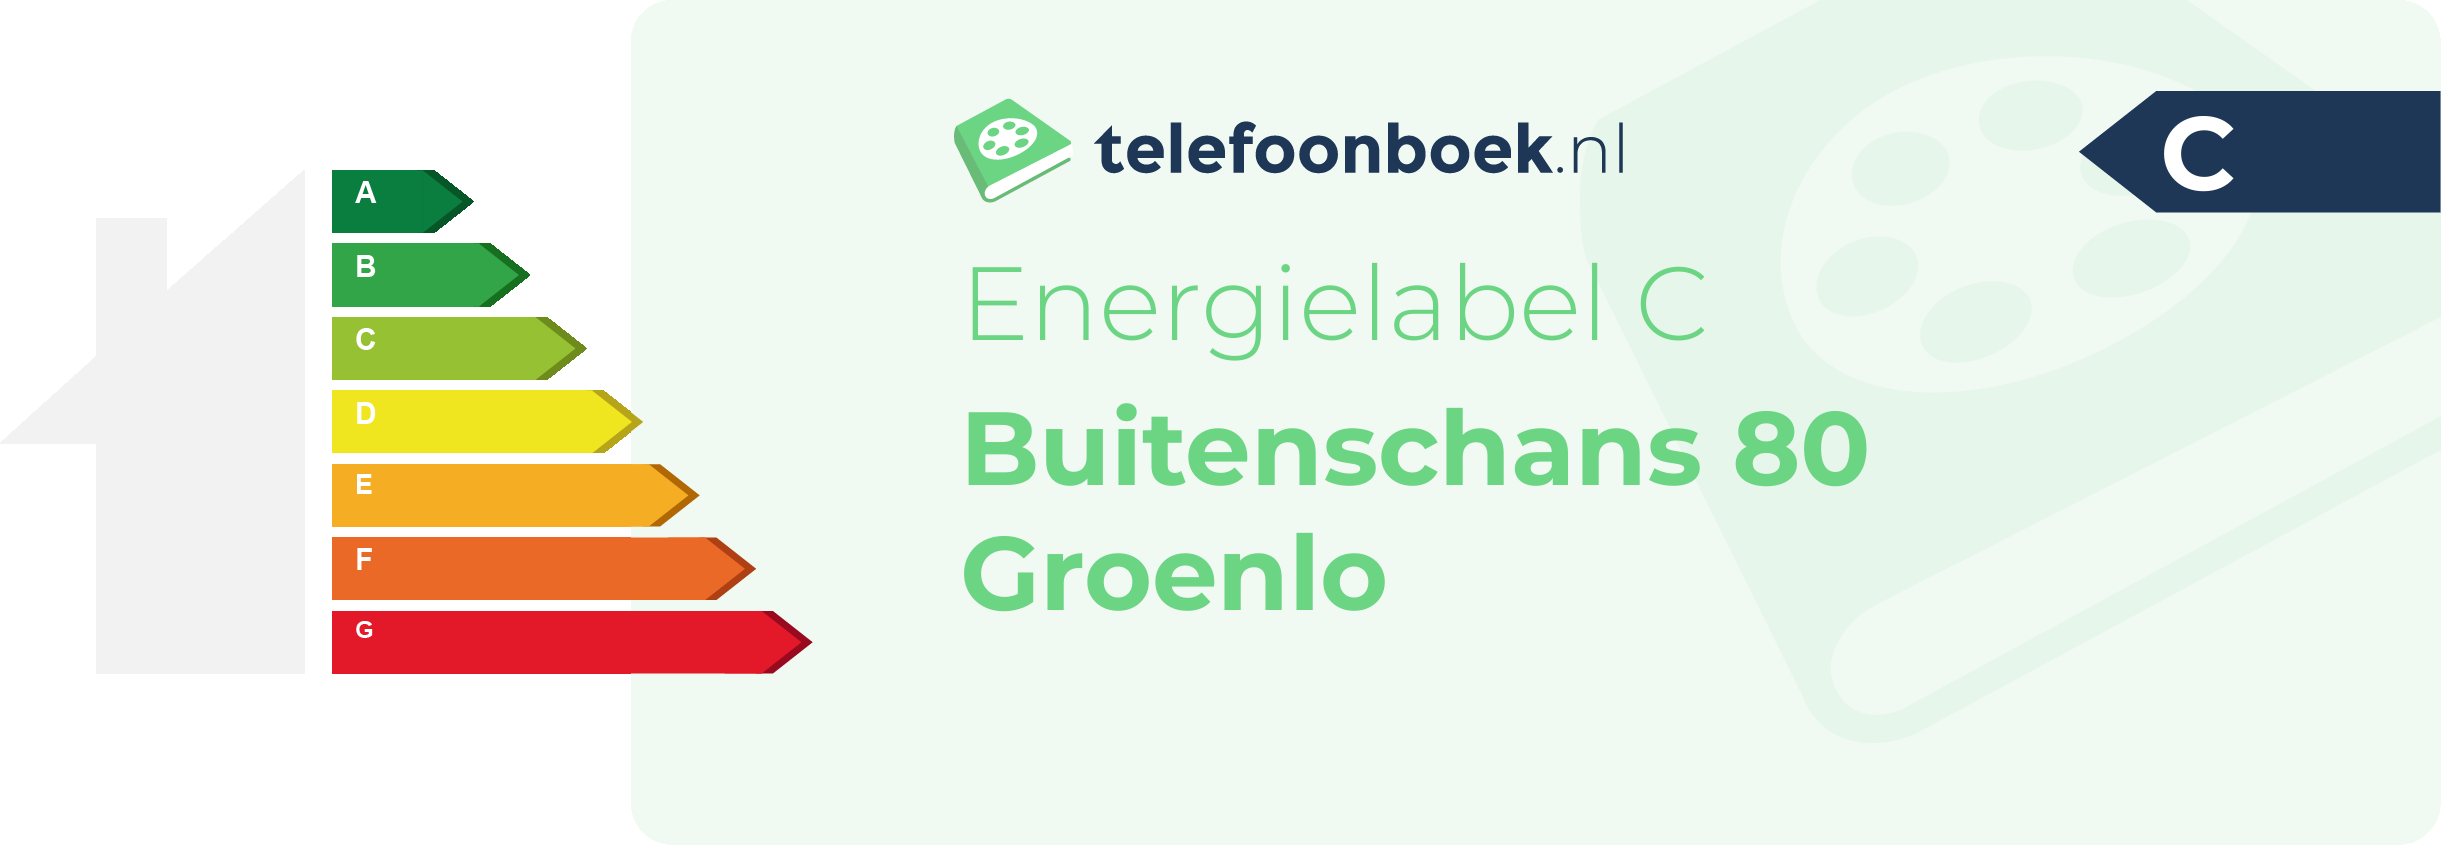 Energielabel Buitenschans 80 Groenlo